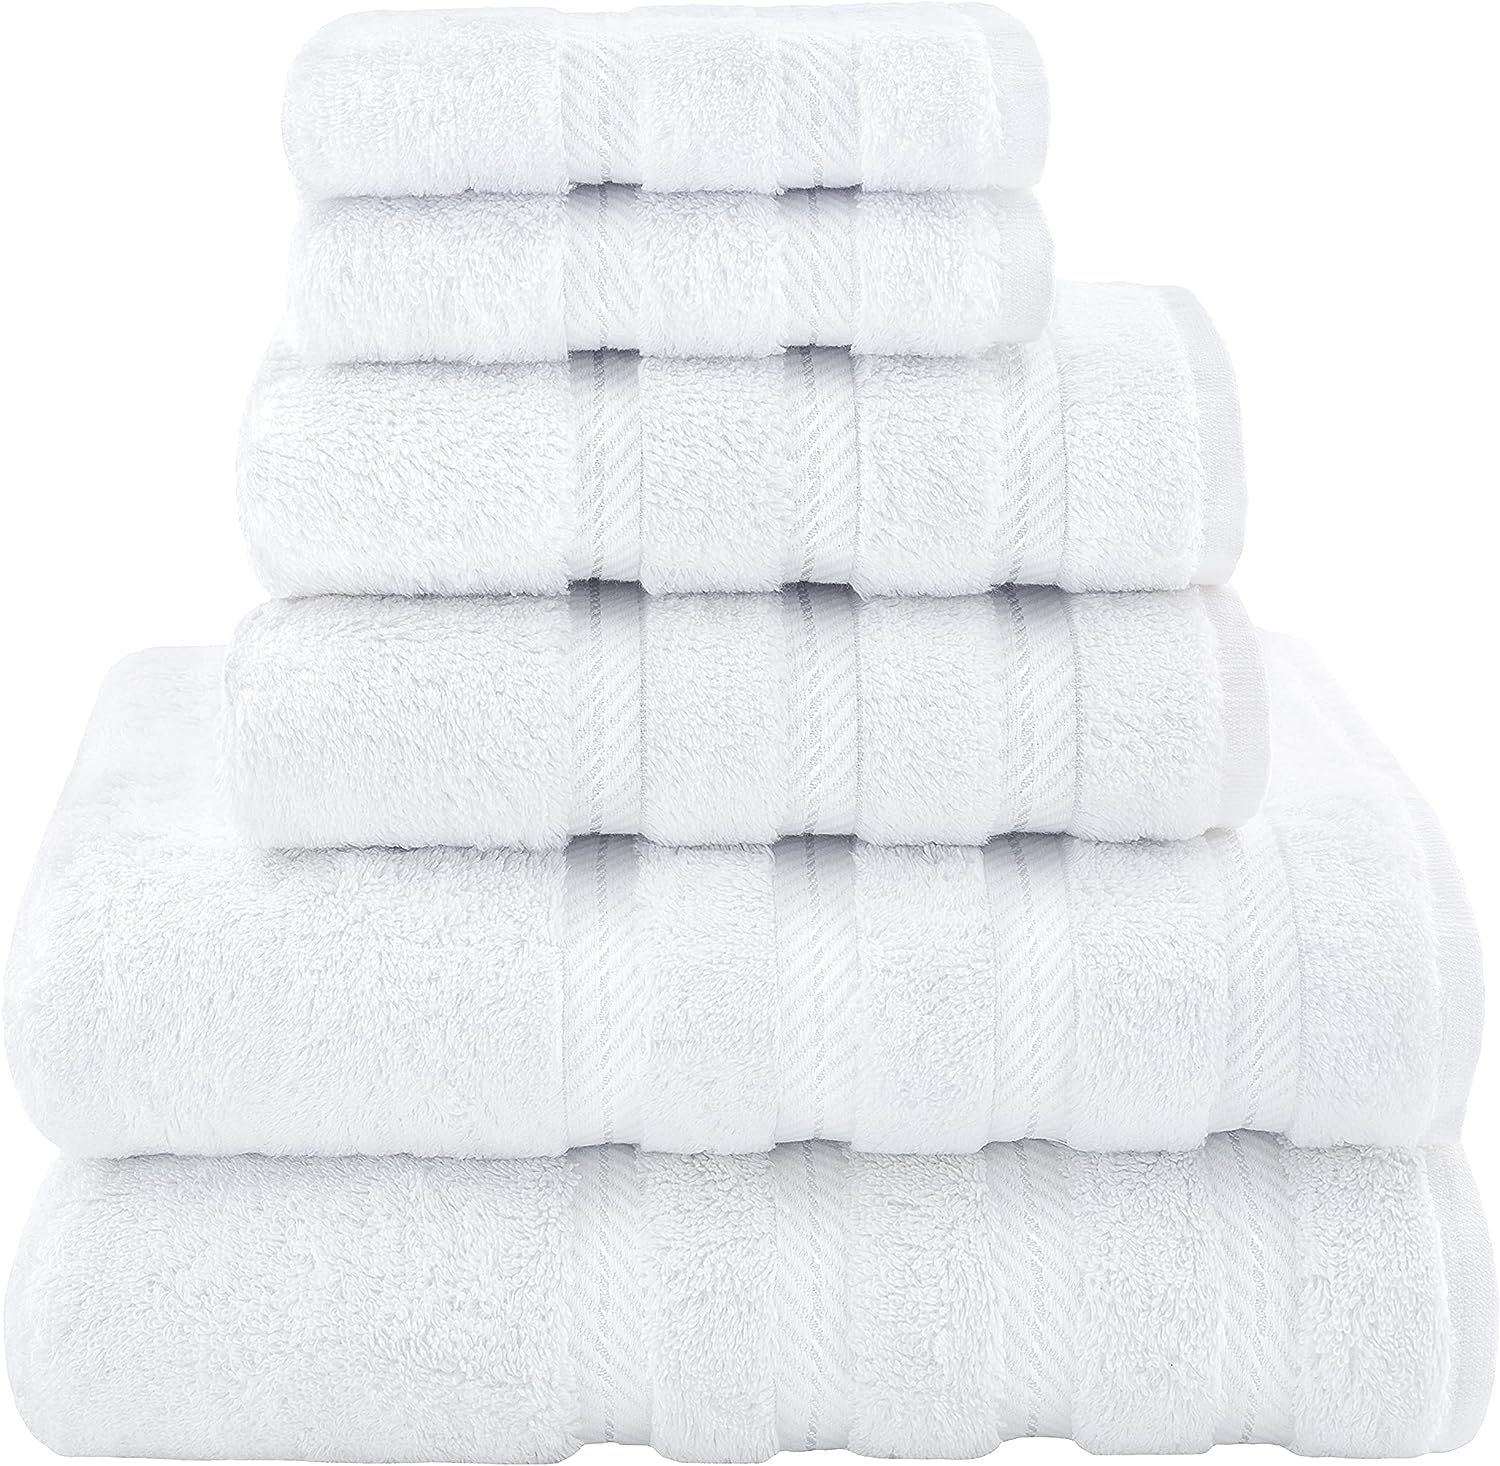 Superior Juego de toallas de algodón, incluye 2 toallas de baño y 2 toallas  de baño, perfecto para baño, ducha, spa, baño de invitados, uso diario